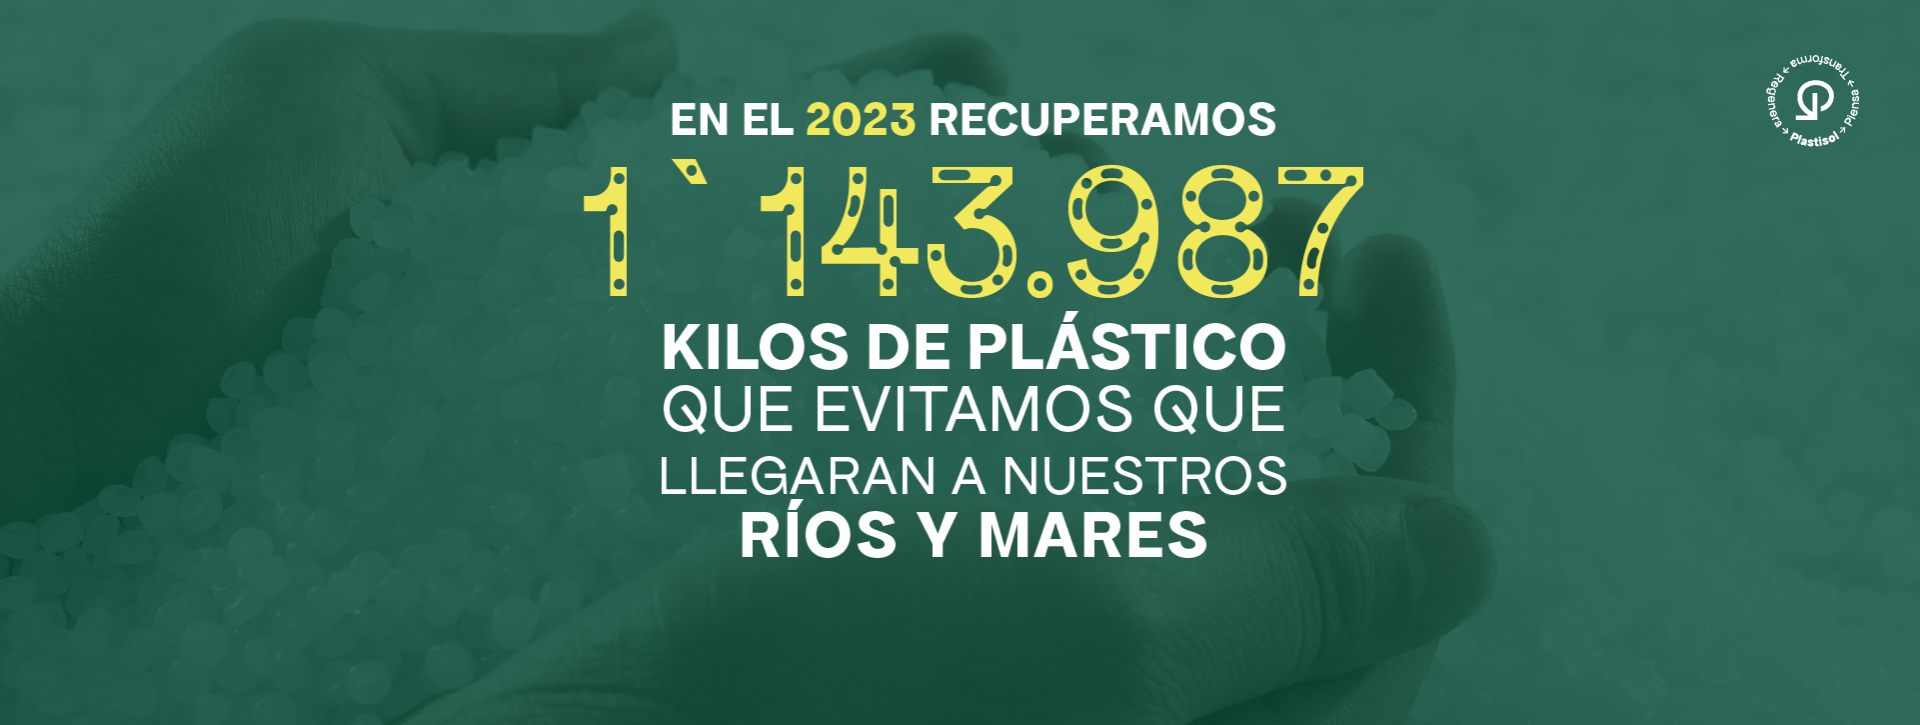 equivalencias en plastico reciclado 2023-15